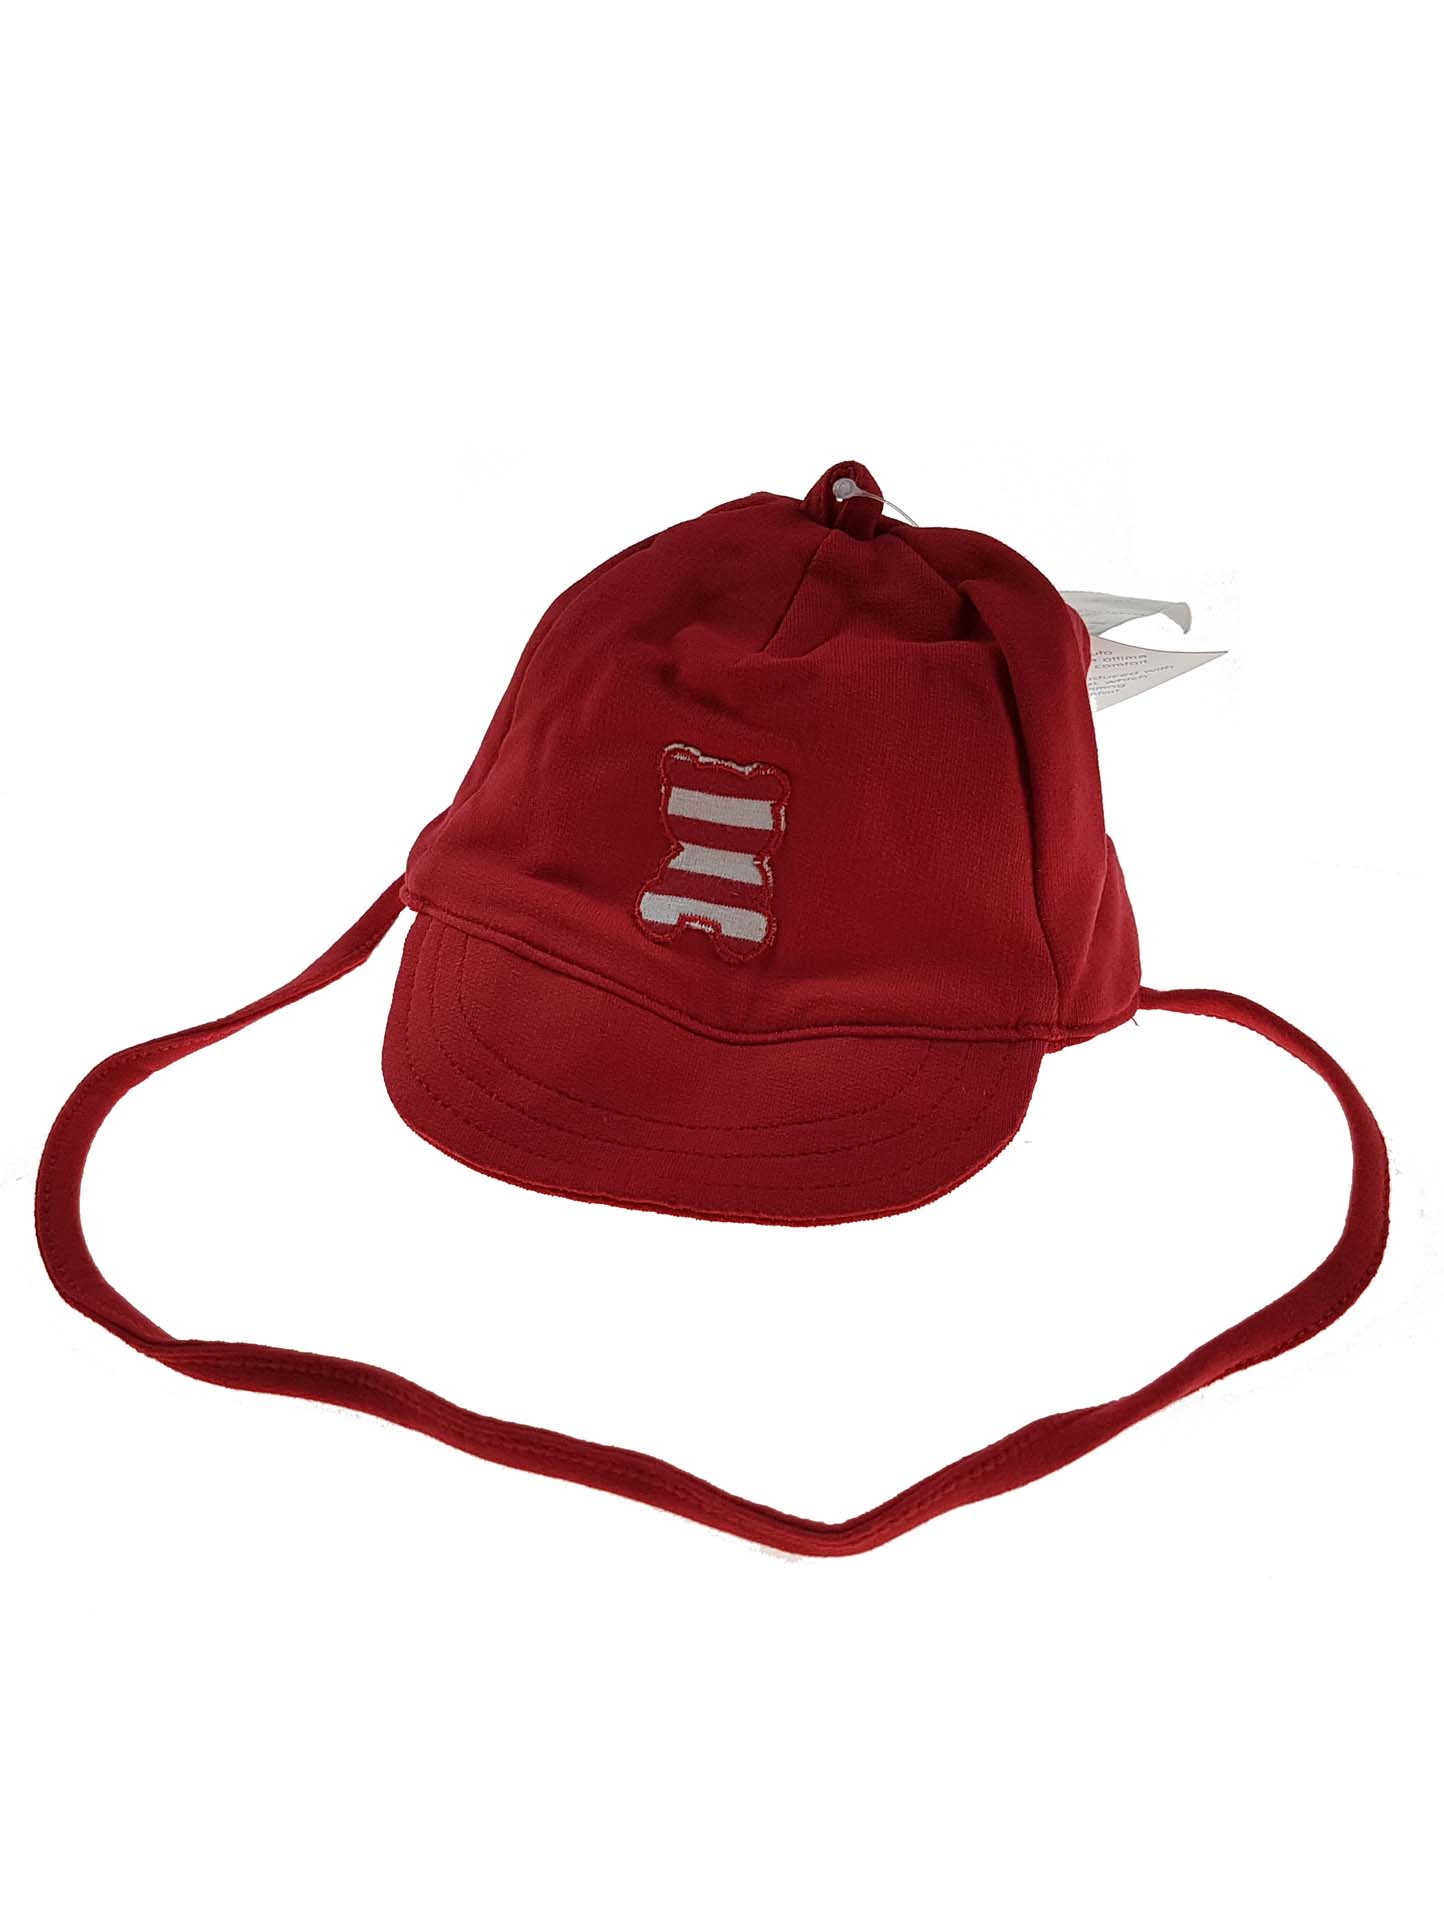 Червона шапочка для малюка